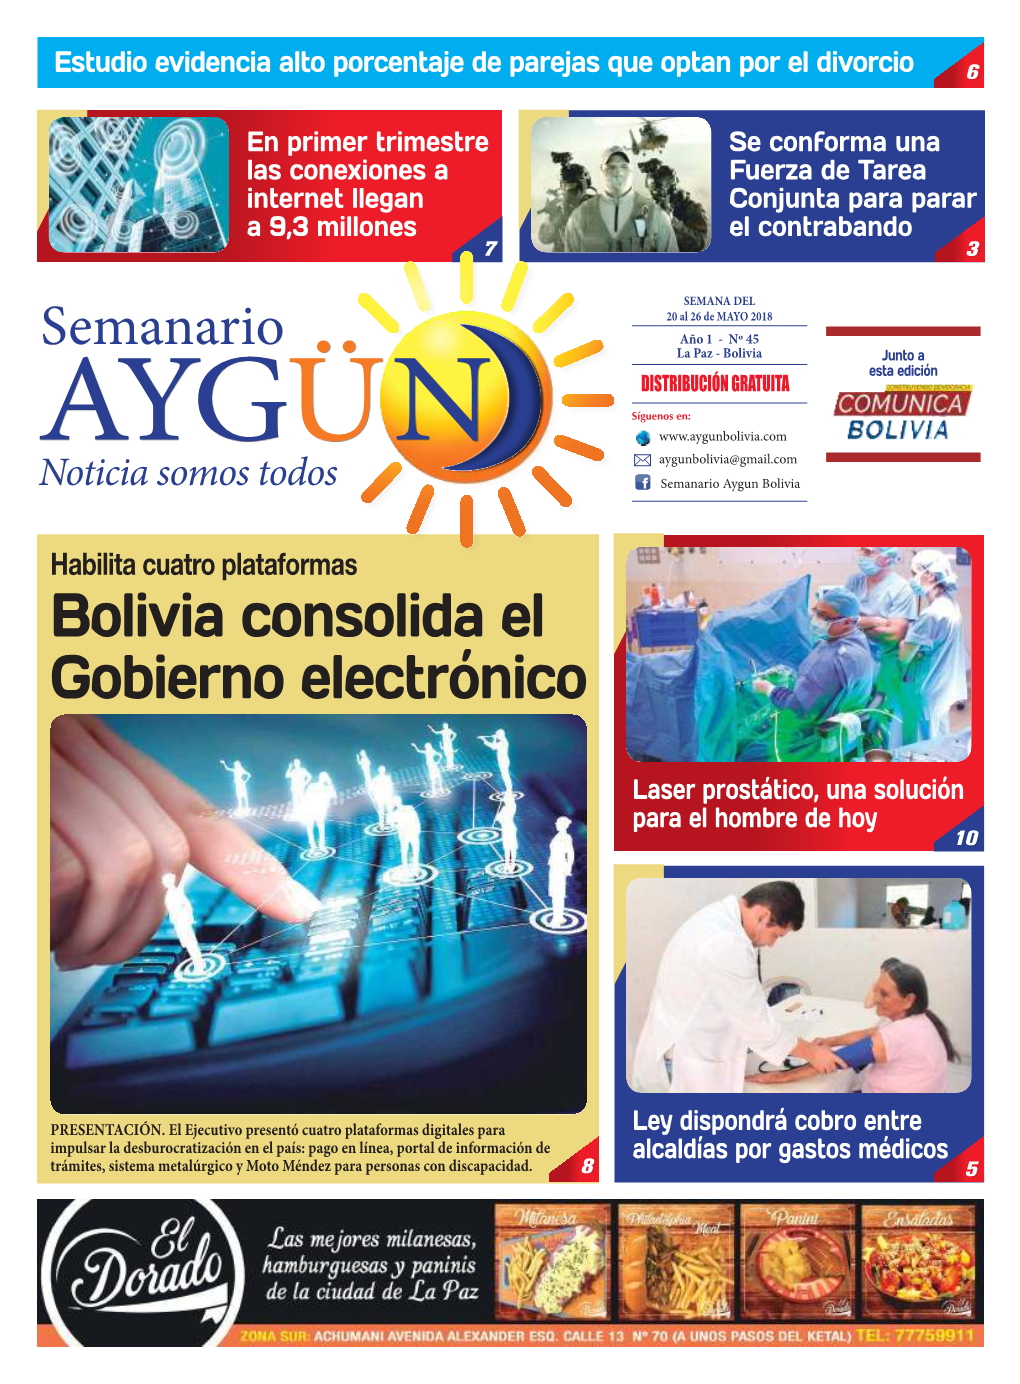 Bolivia Consolida El Gobierno Electrónico